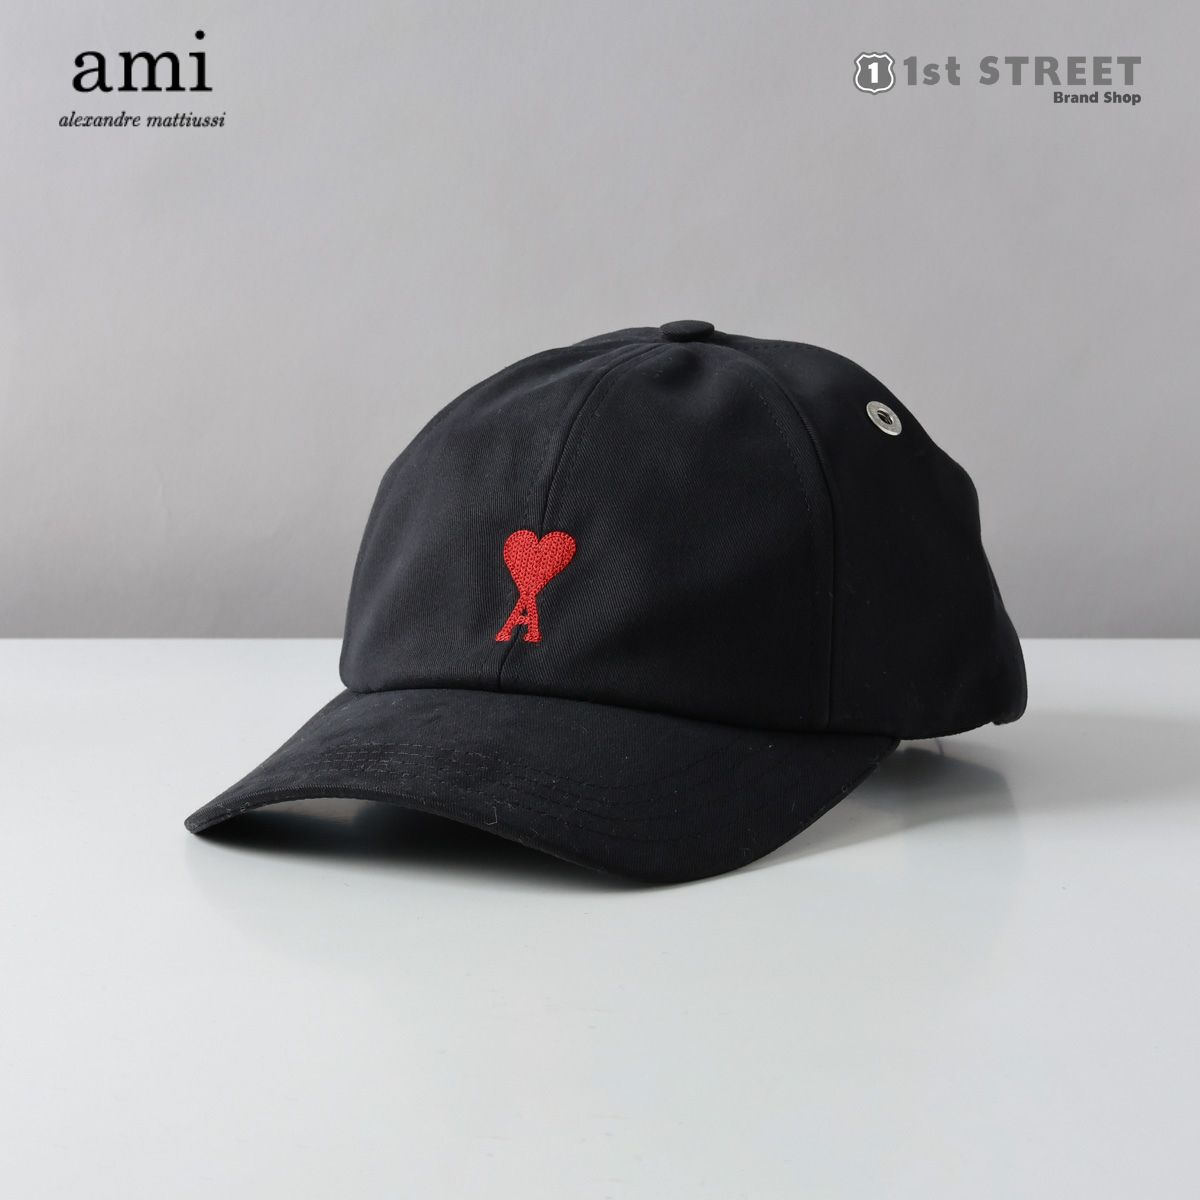 アミ パリス AMI PARIS キャップ ブラック アミ 帽子 キャップ 黒 無地 ロゴ ブランド 高級 BFUCP006.CO0051 RED ADC EMBROIDERY CAP 001 WOOL TRICOTINE BLACK ユニセックス メンズ レディース